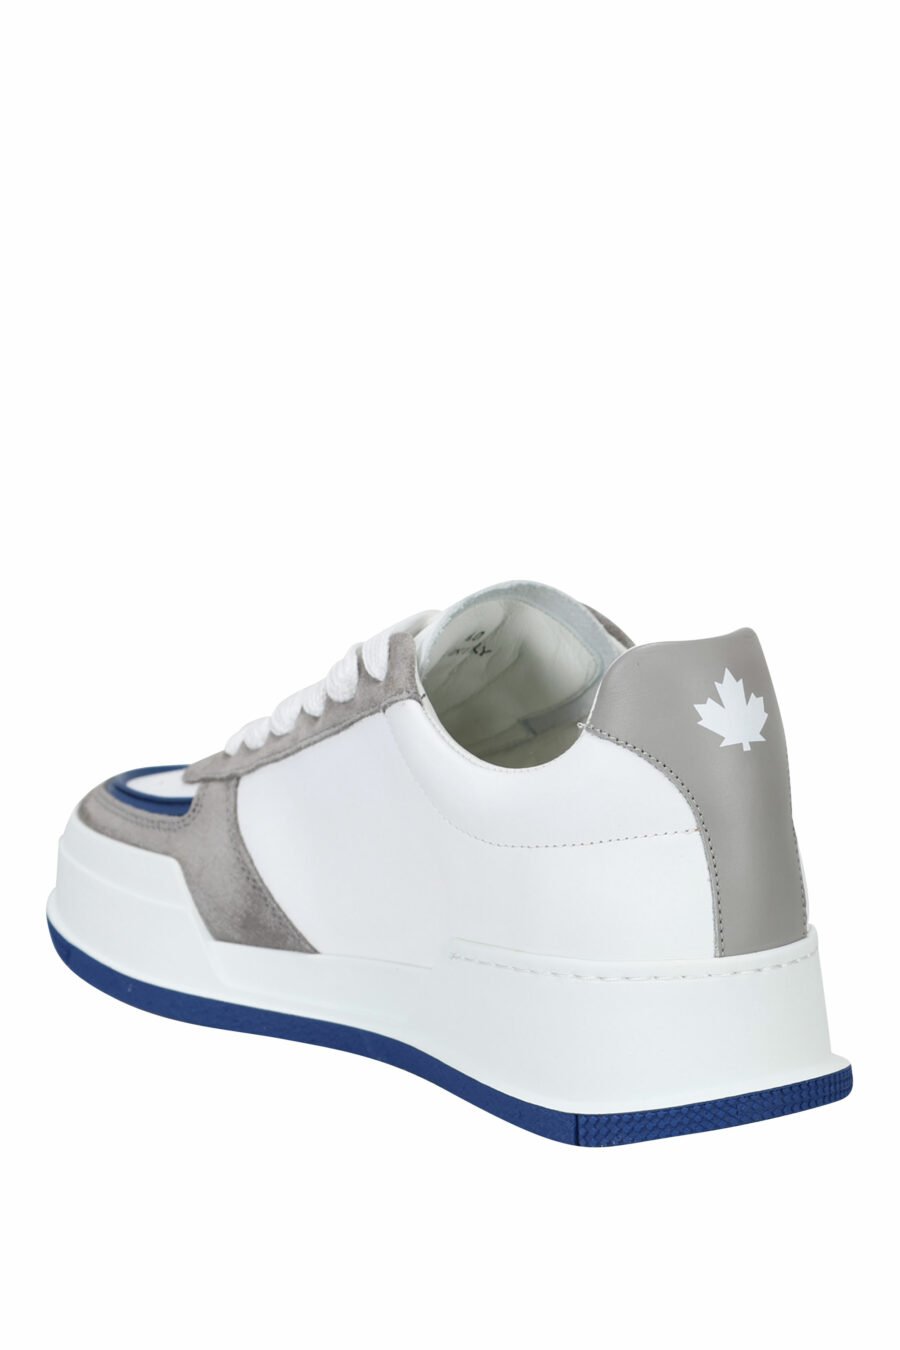 Zapatillas blancas mix con gris, azul y logo hoja roja - 8055777242216 3